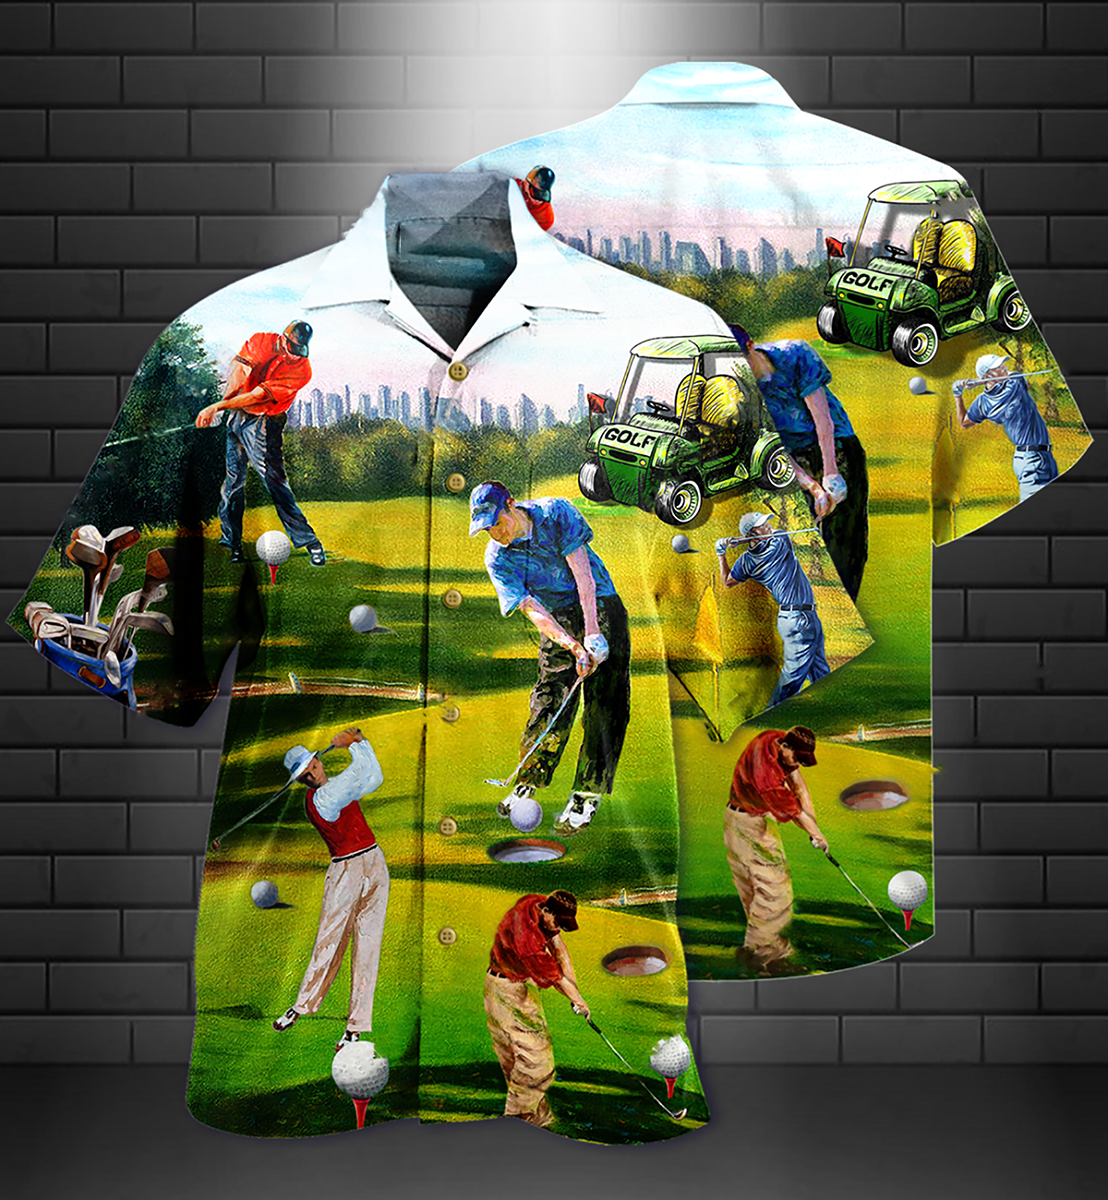 Golf Love It - Hawaiian Shirt - Owls Matrix LTD